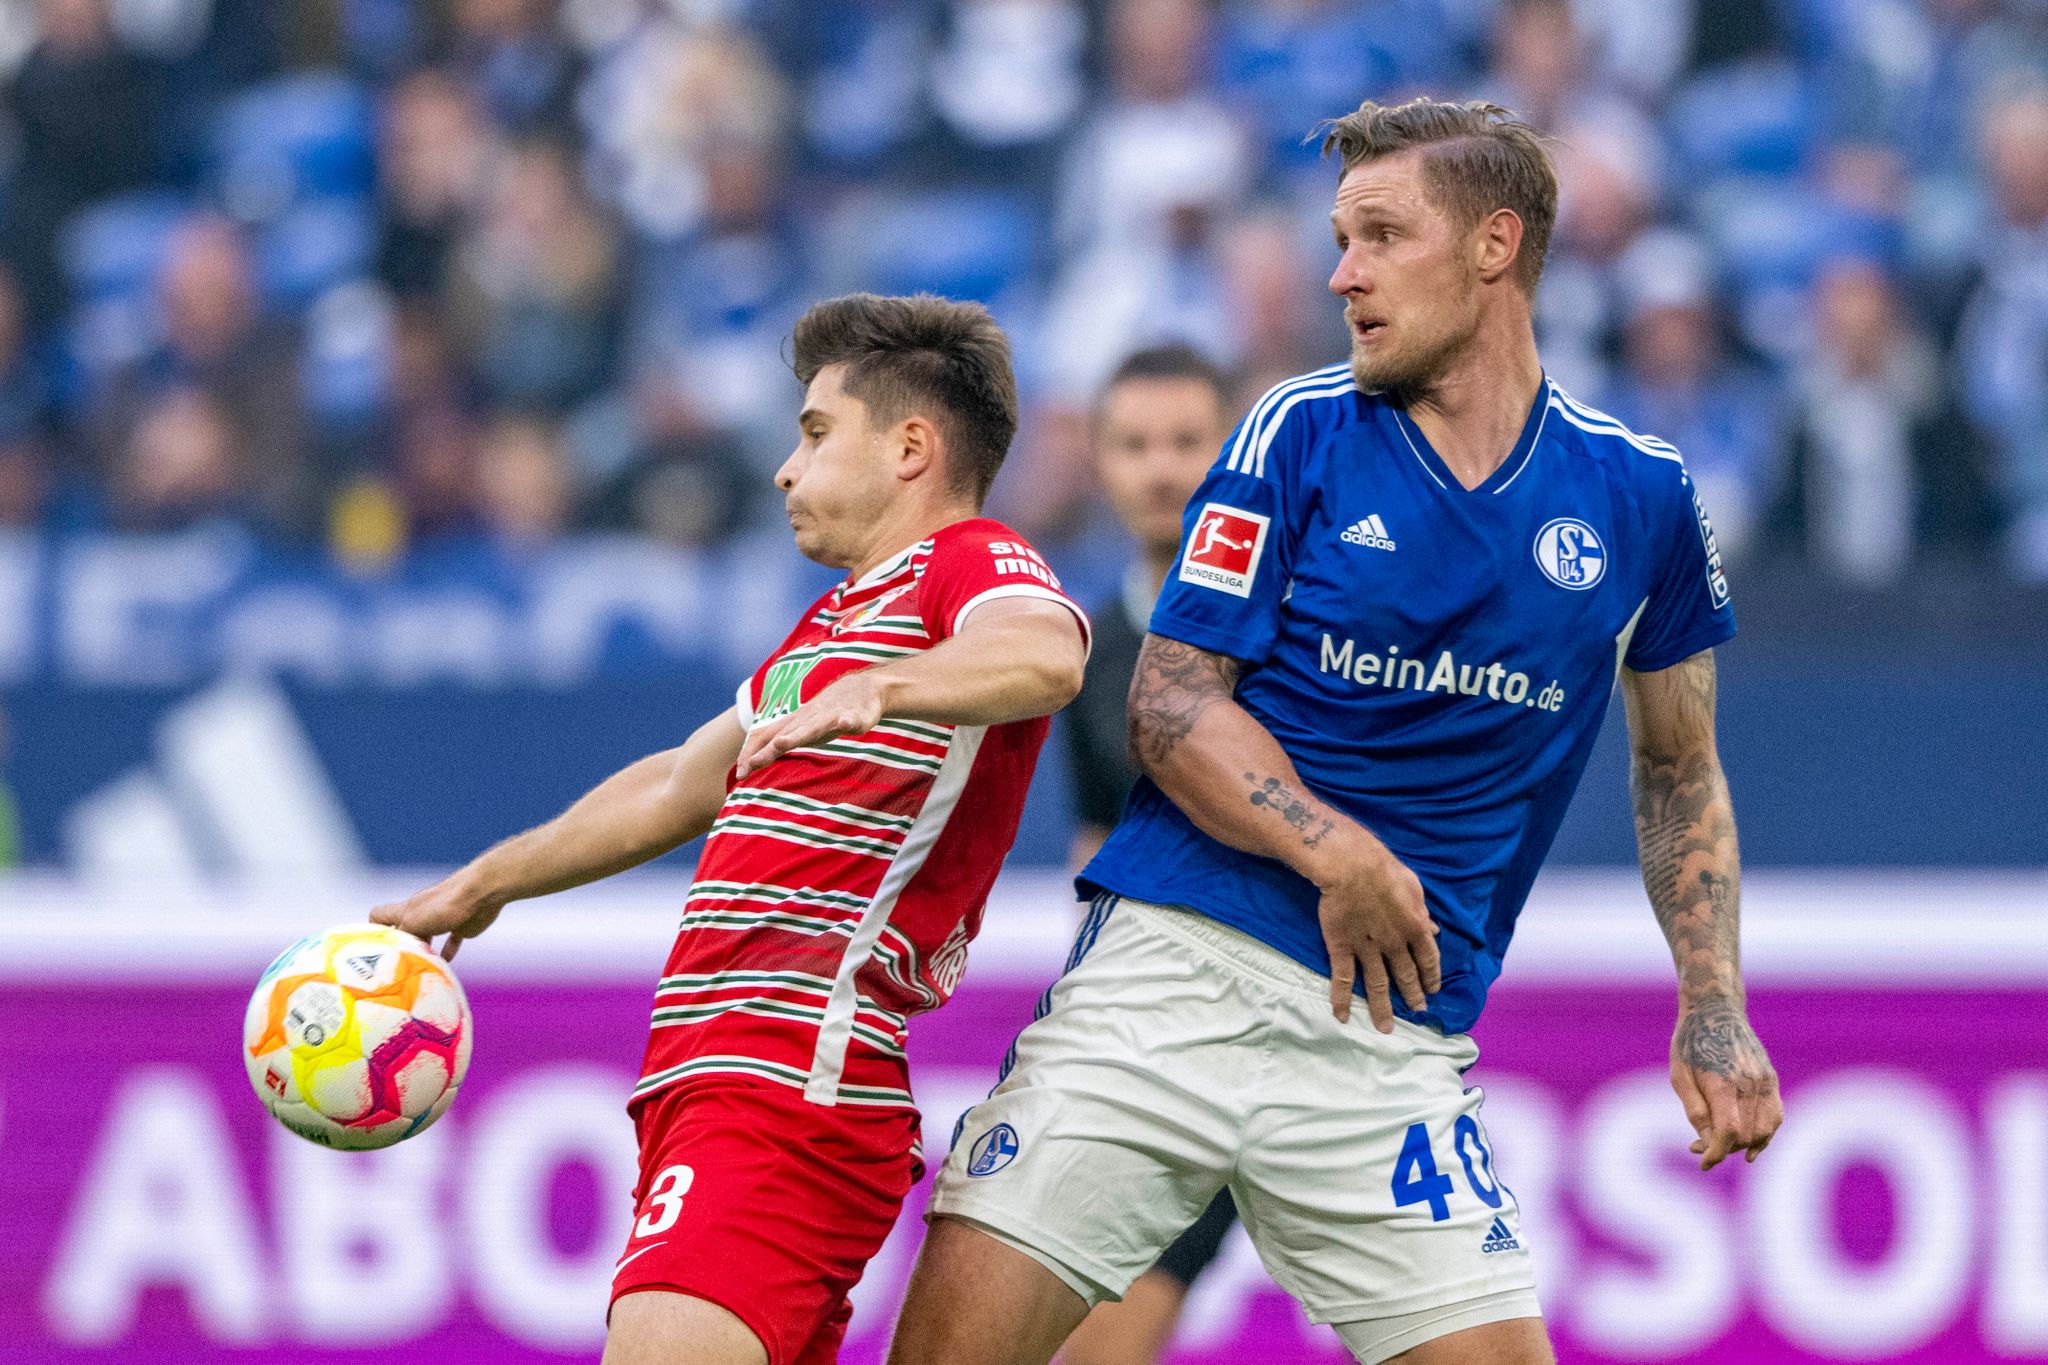 Trotz Überzahl: Schalke zahlt auch gegen Augsburg Lehrgeld